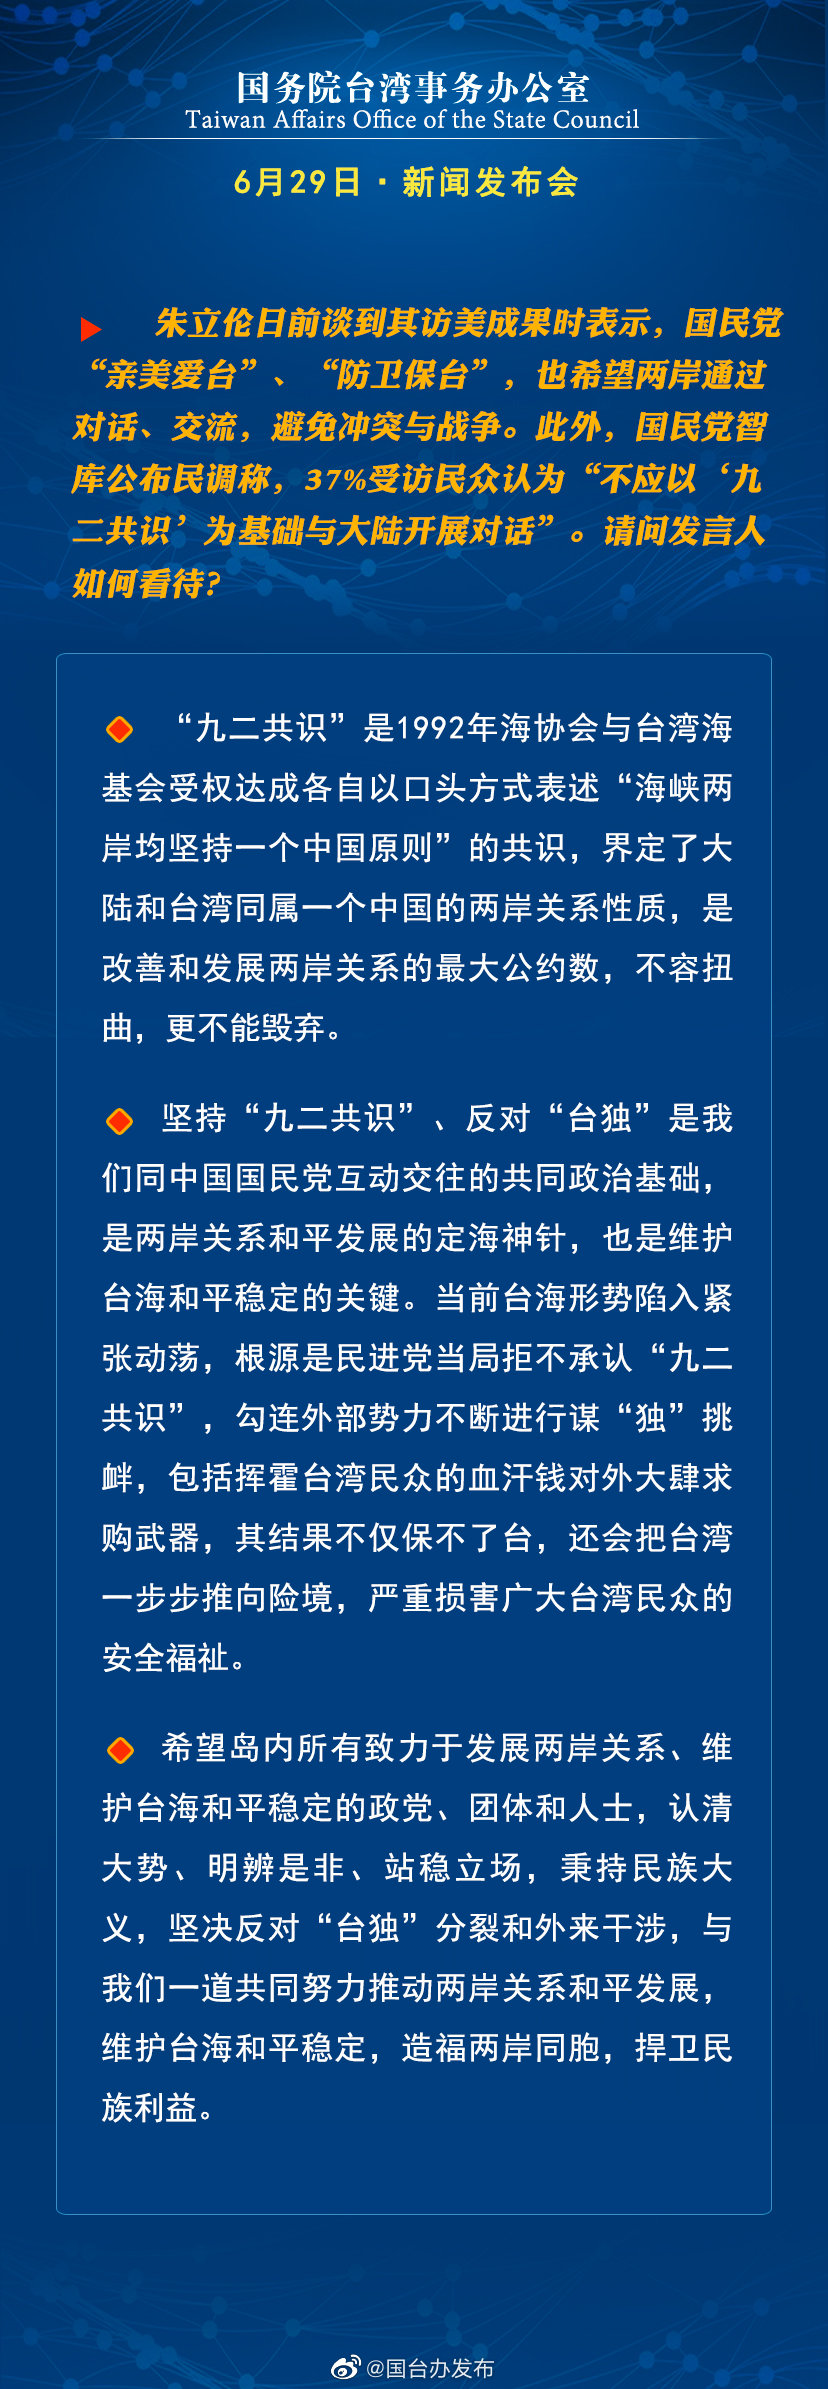 国务院台湾事务办公室6月29日·新闻发布会